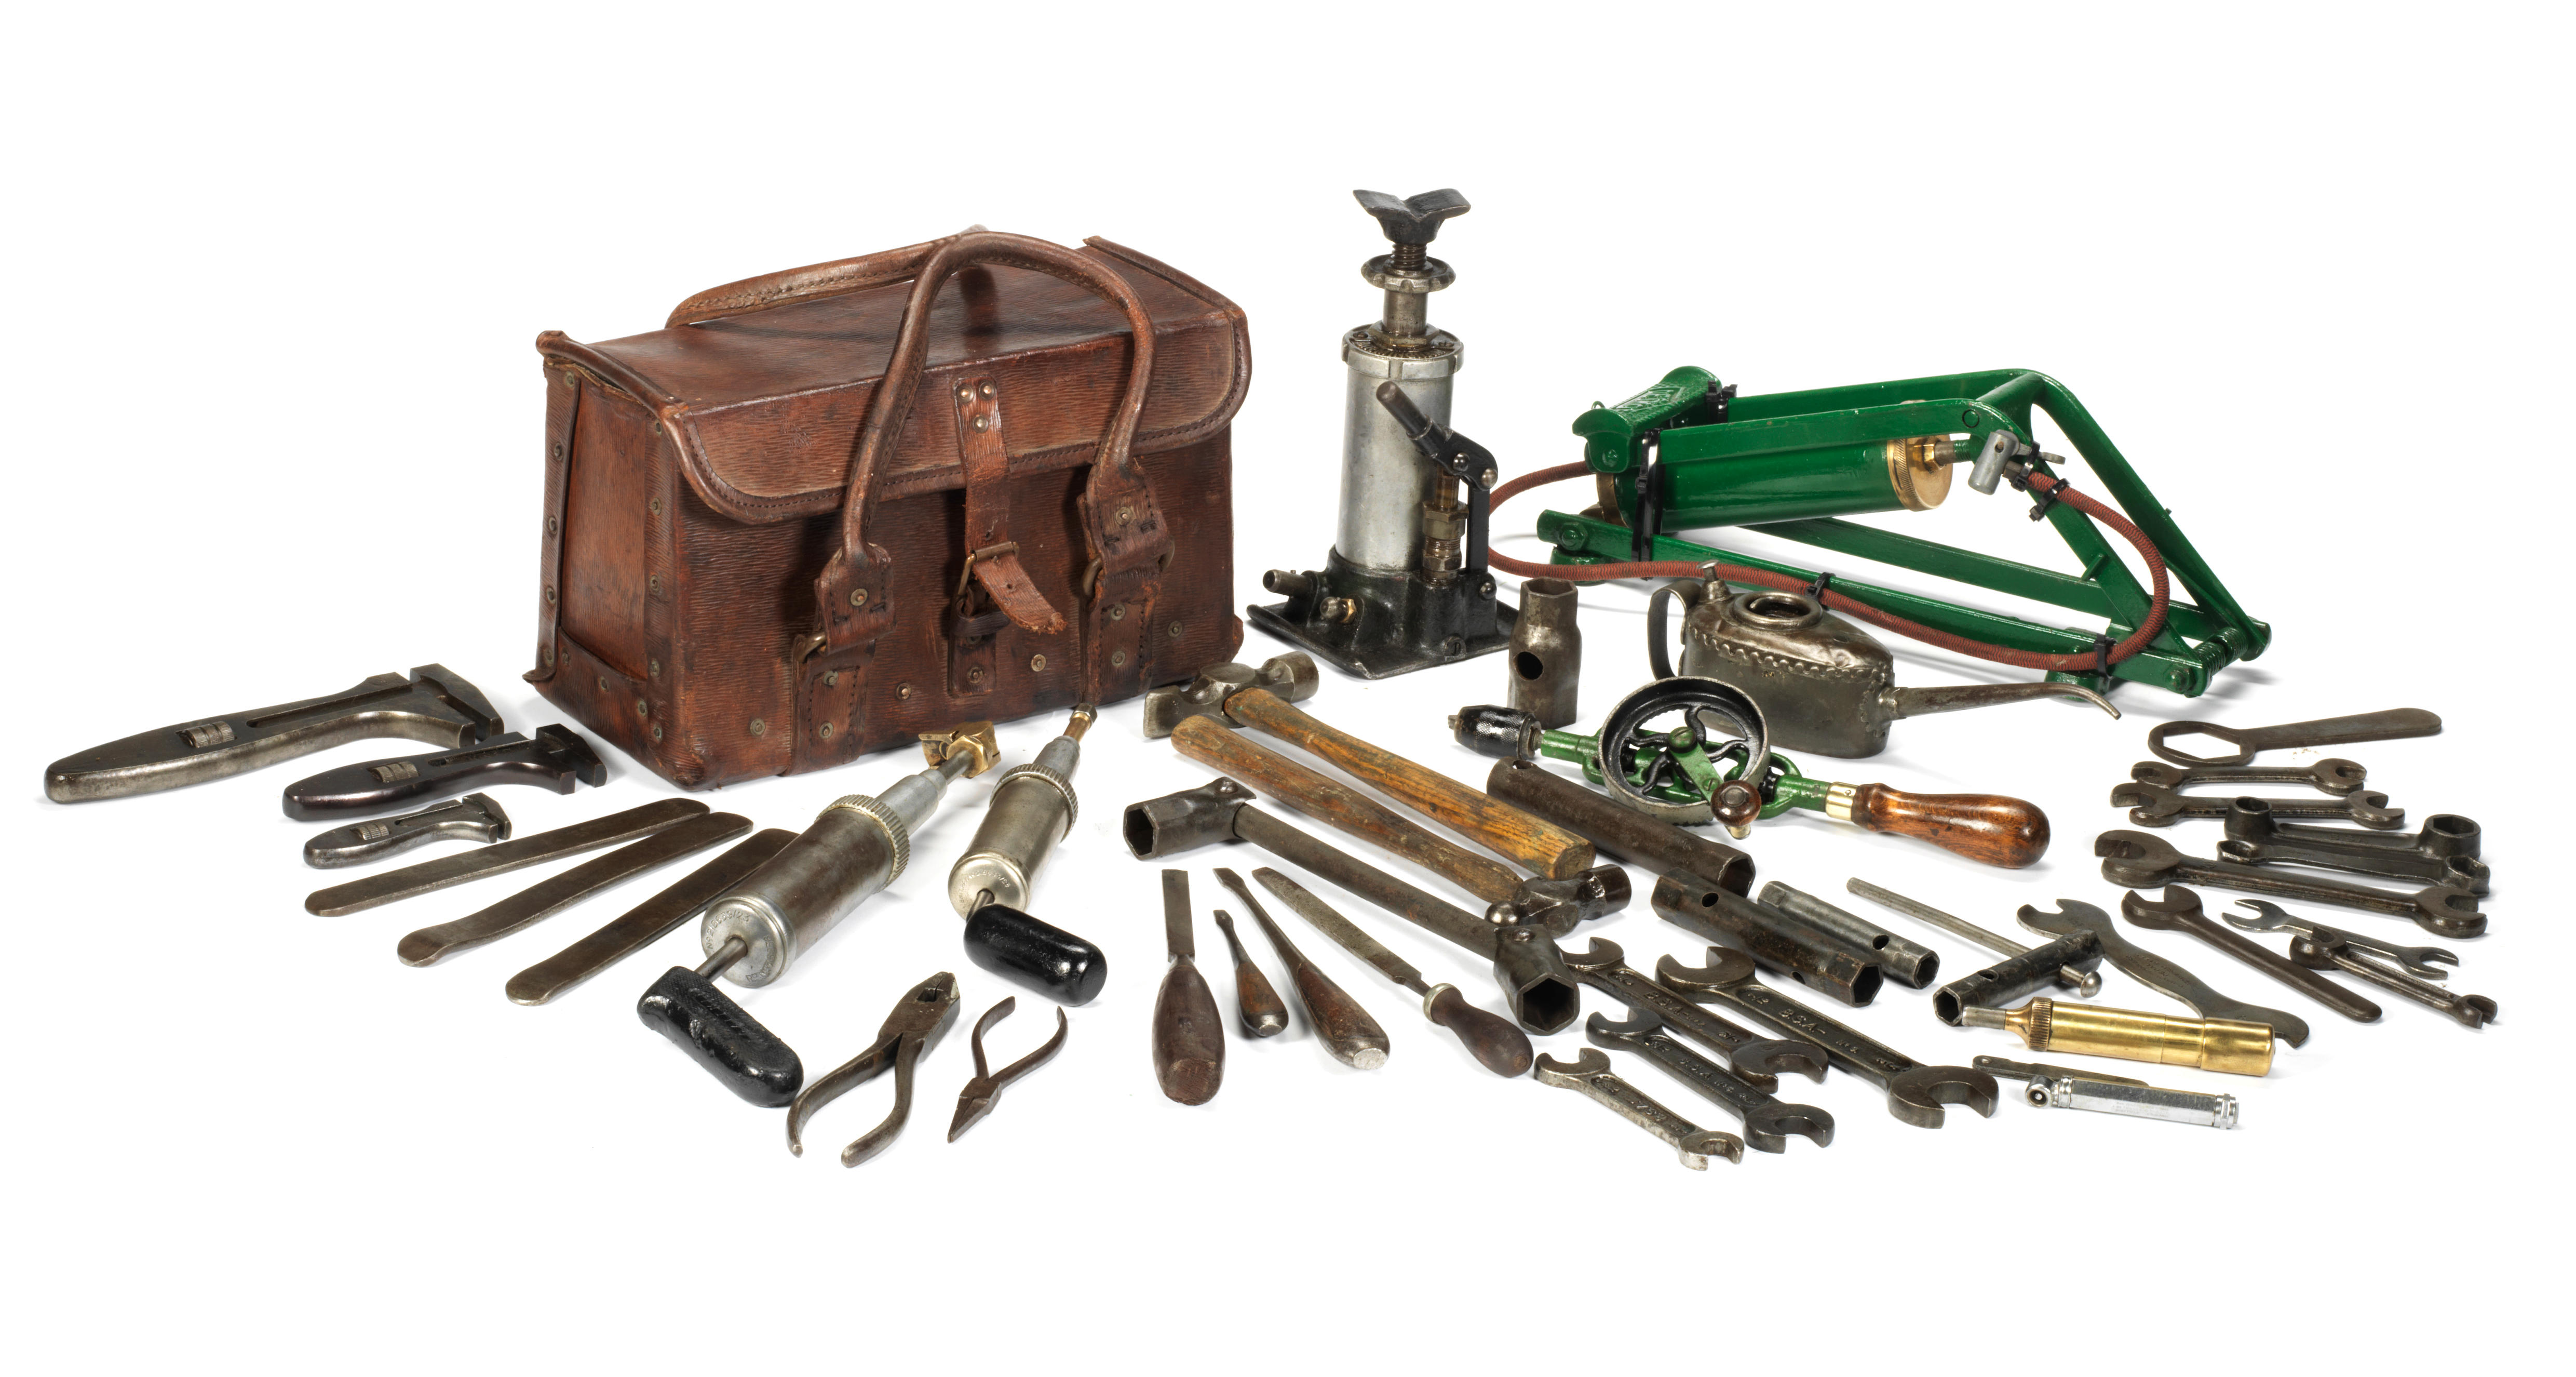 Asprey London Tool Kit, Assembled Tools